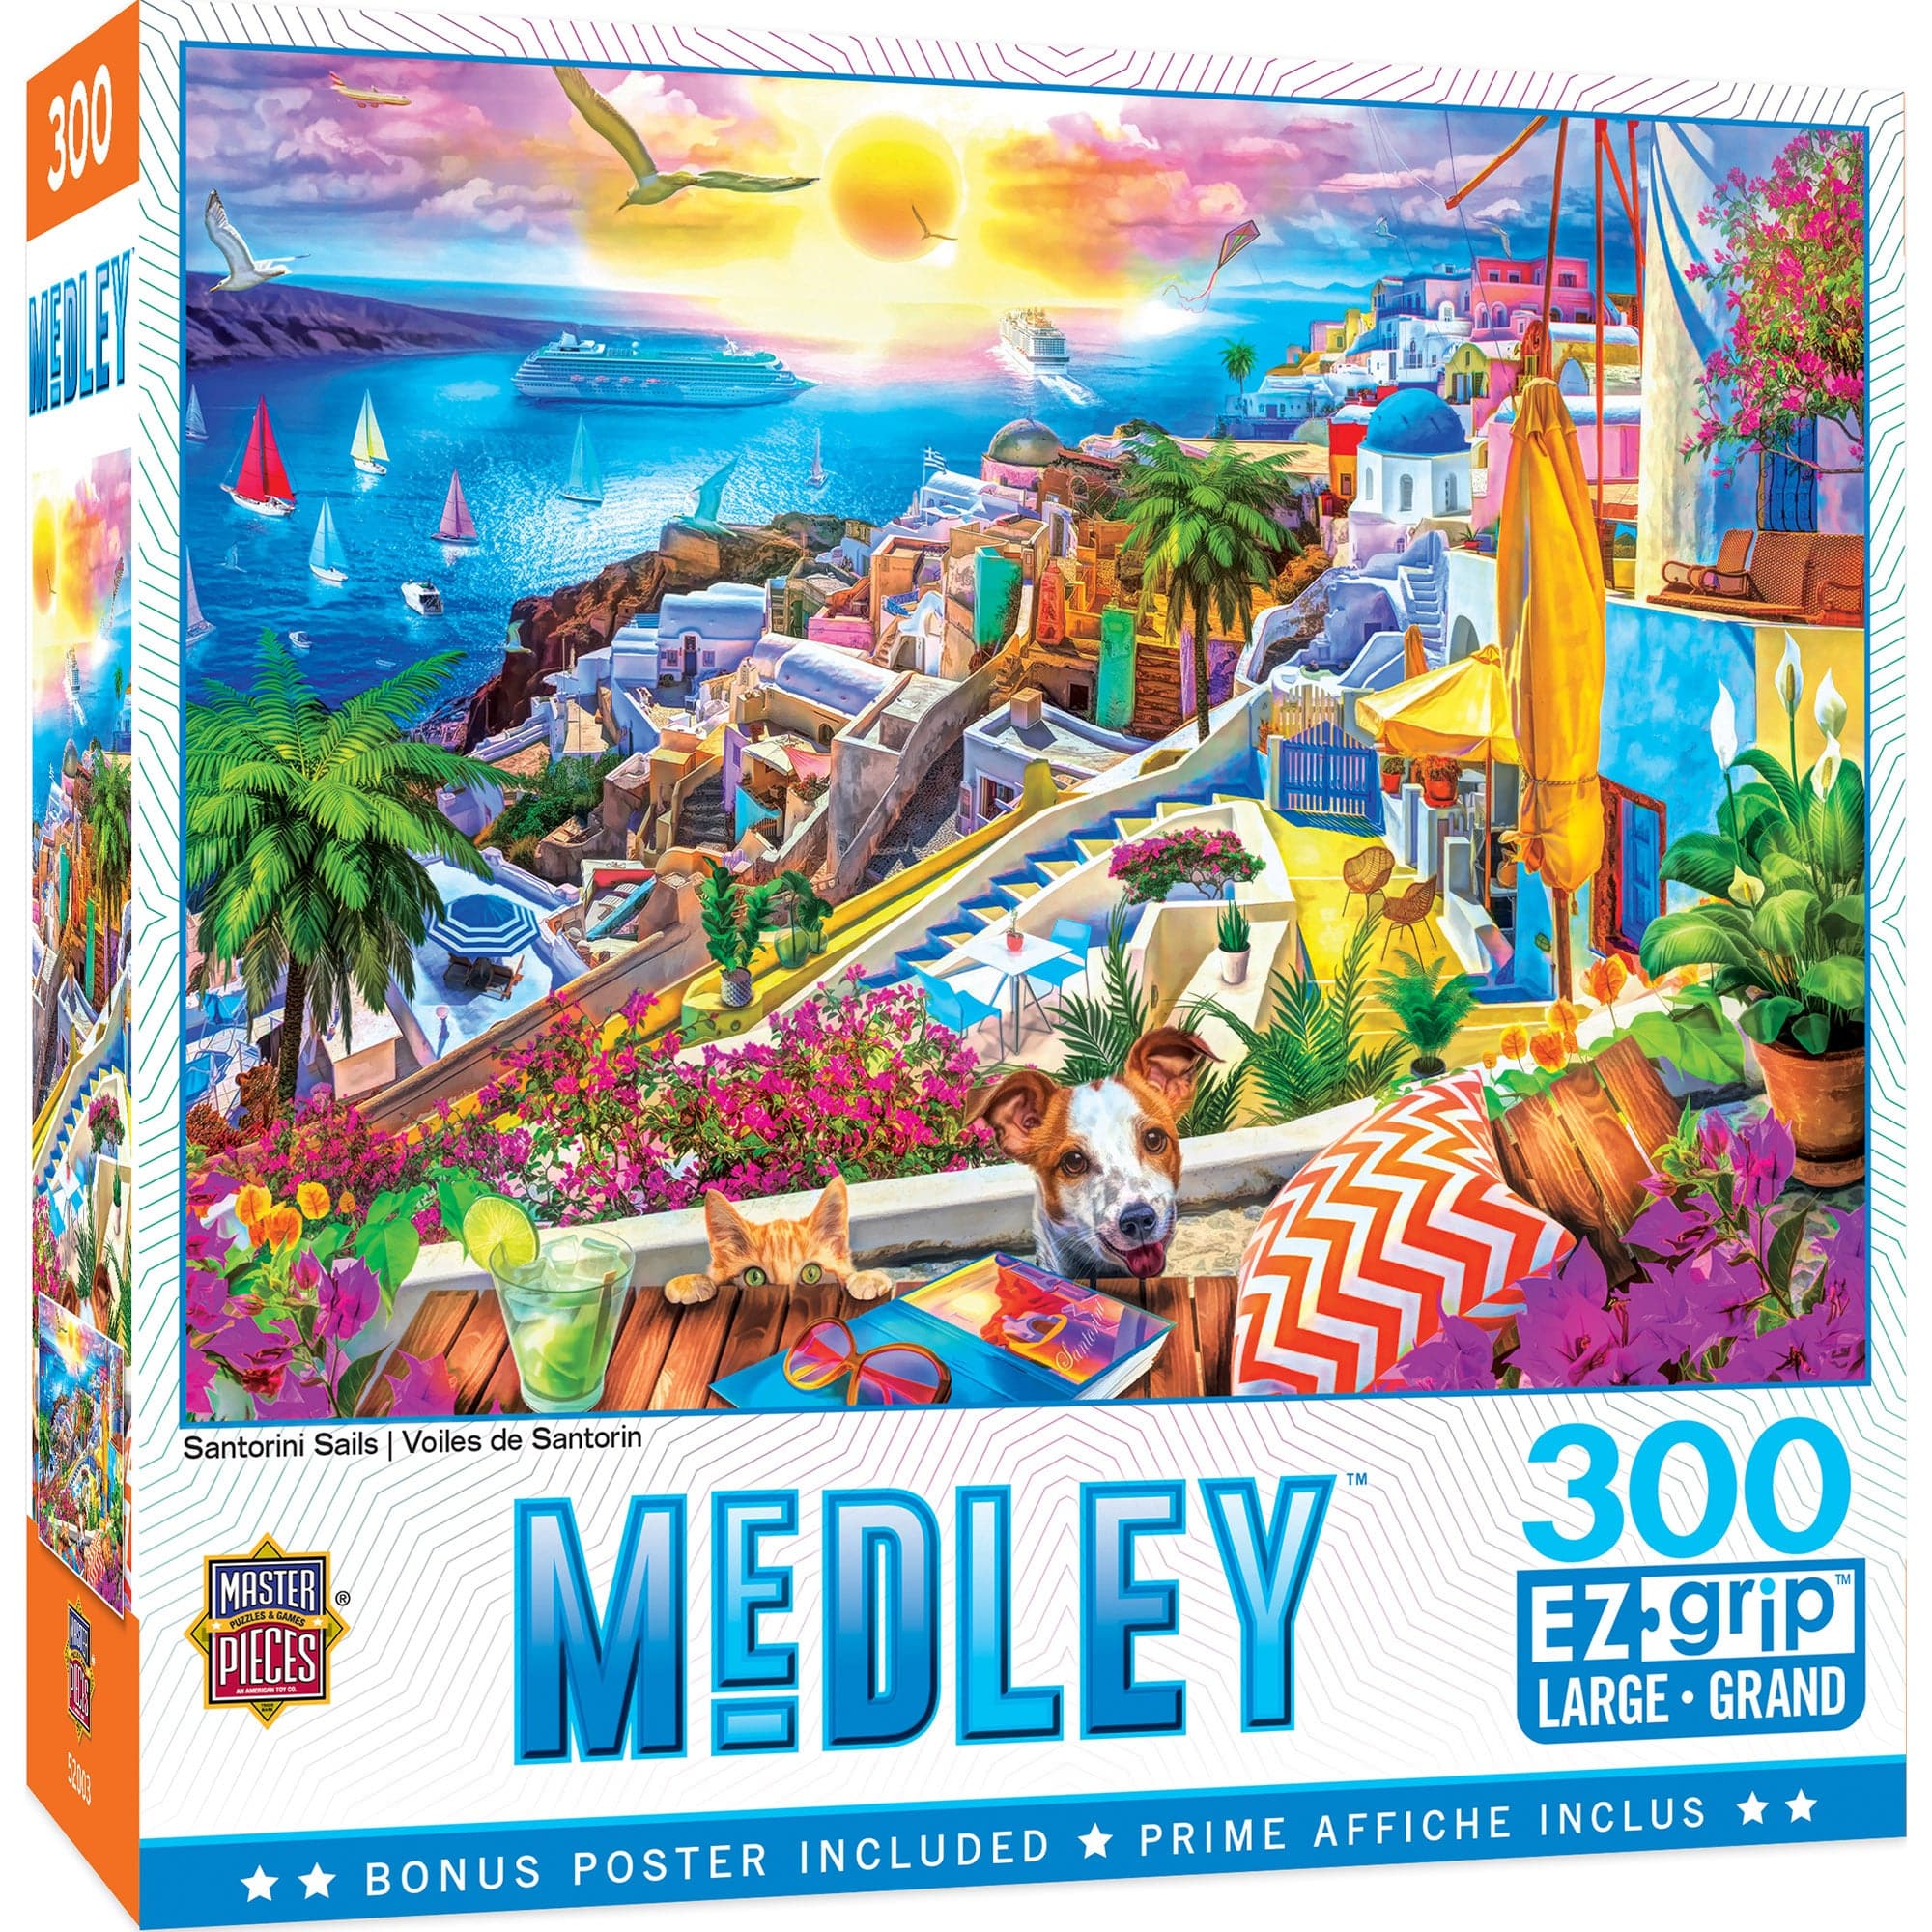 MasterPieces-Medley - Santorini Sails - 300 Piece EzGrip Puzzle-32181-Legacy Toys